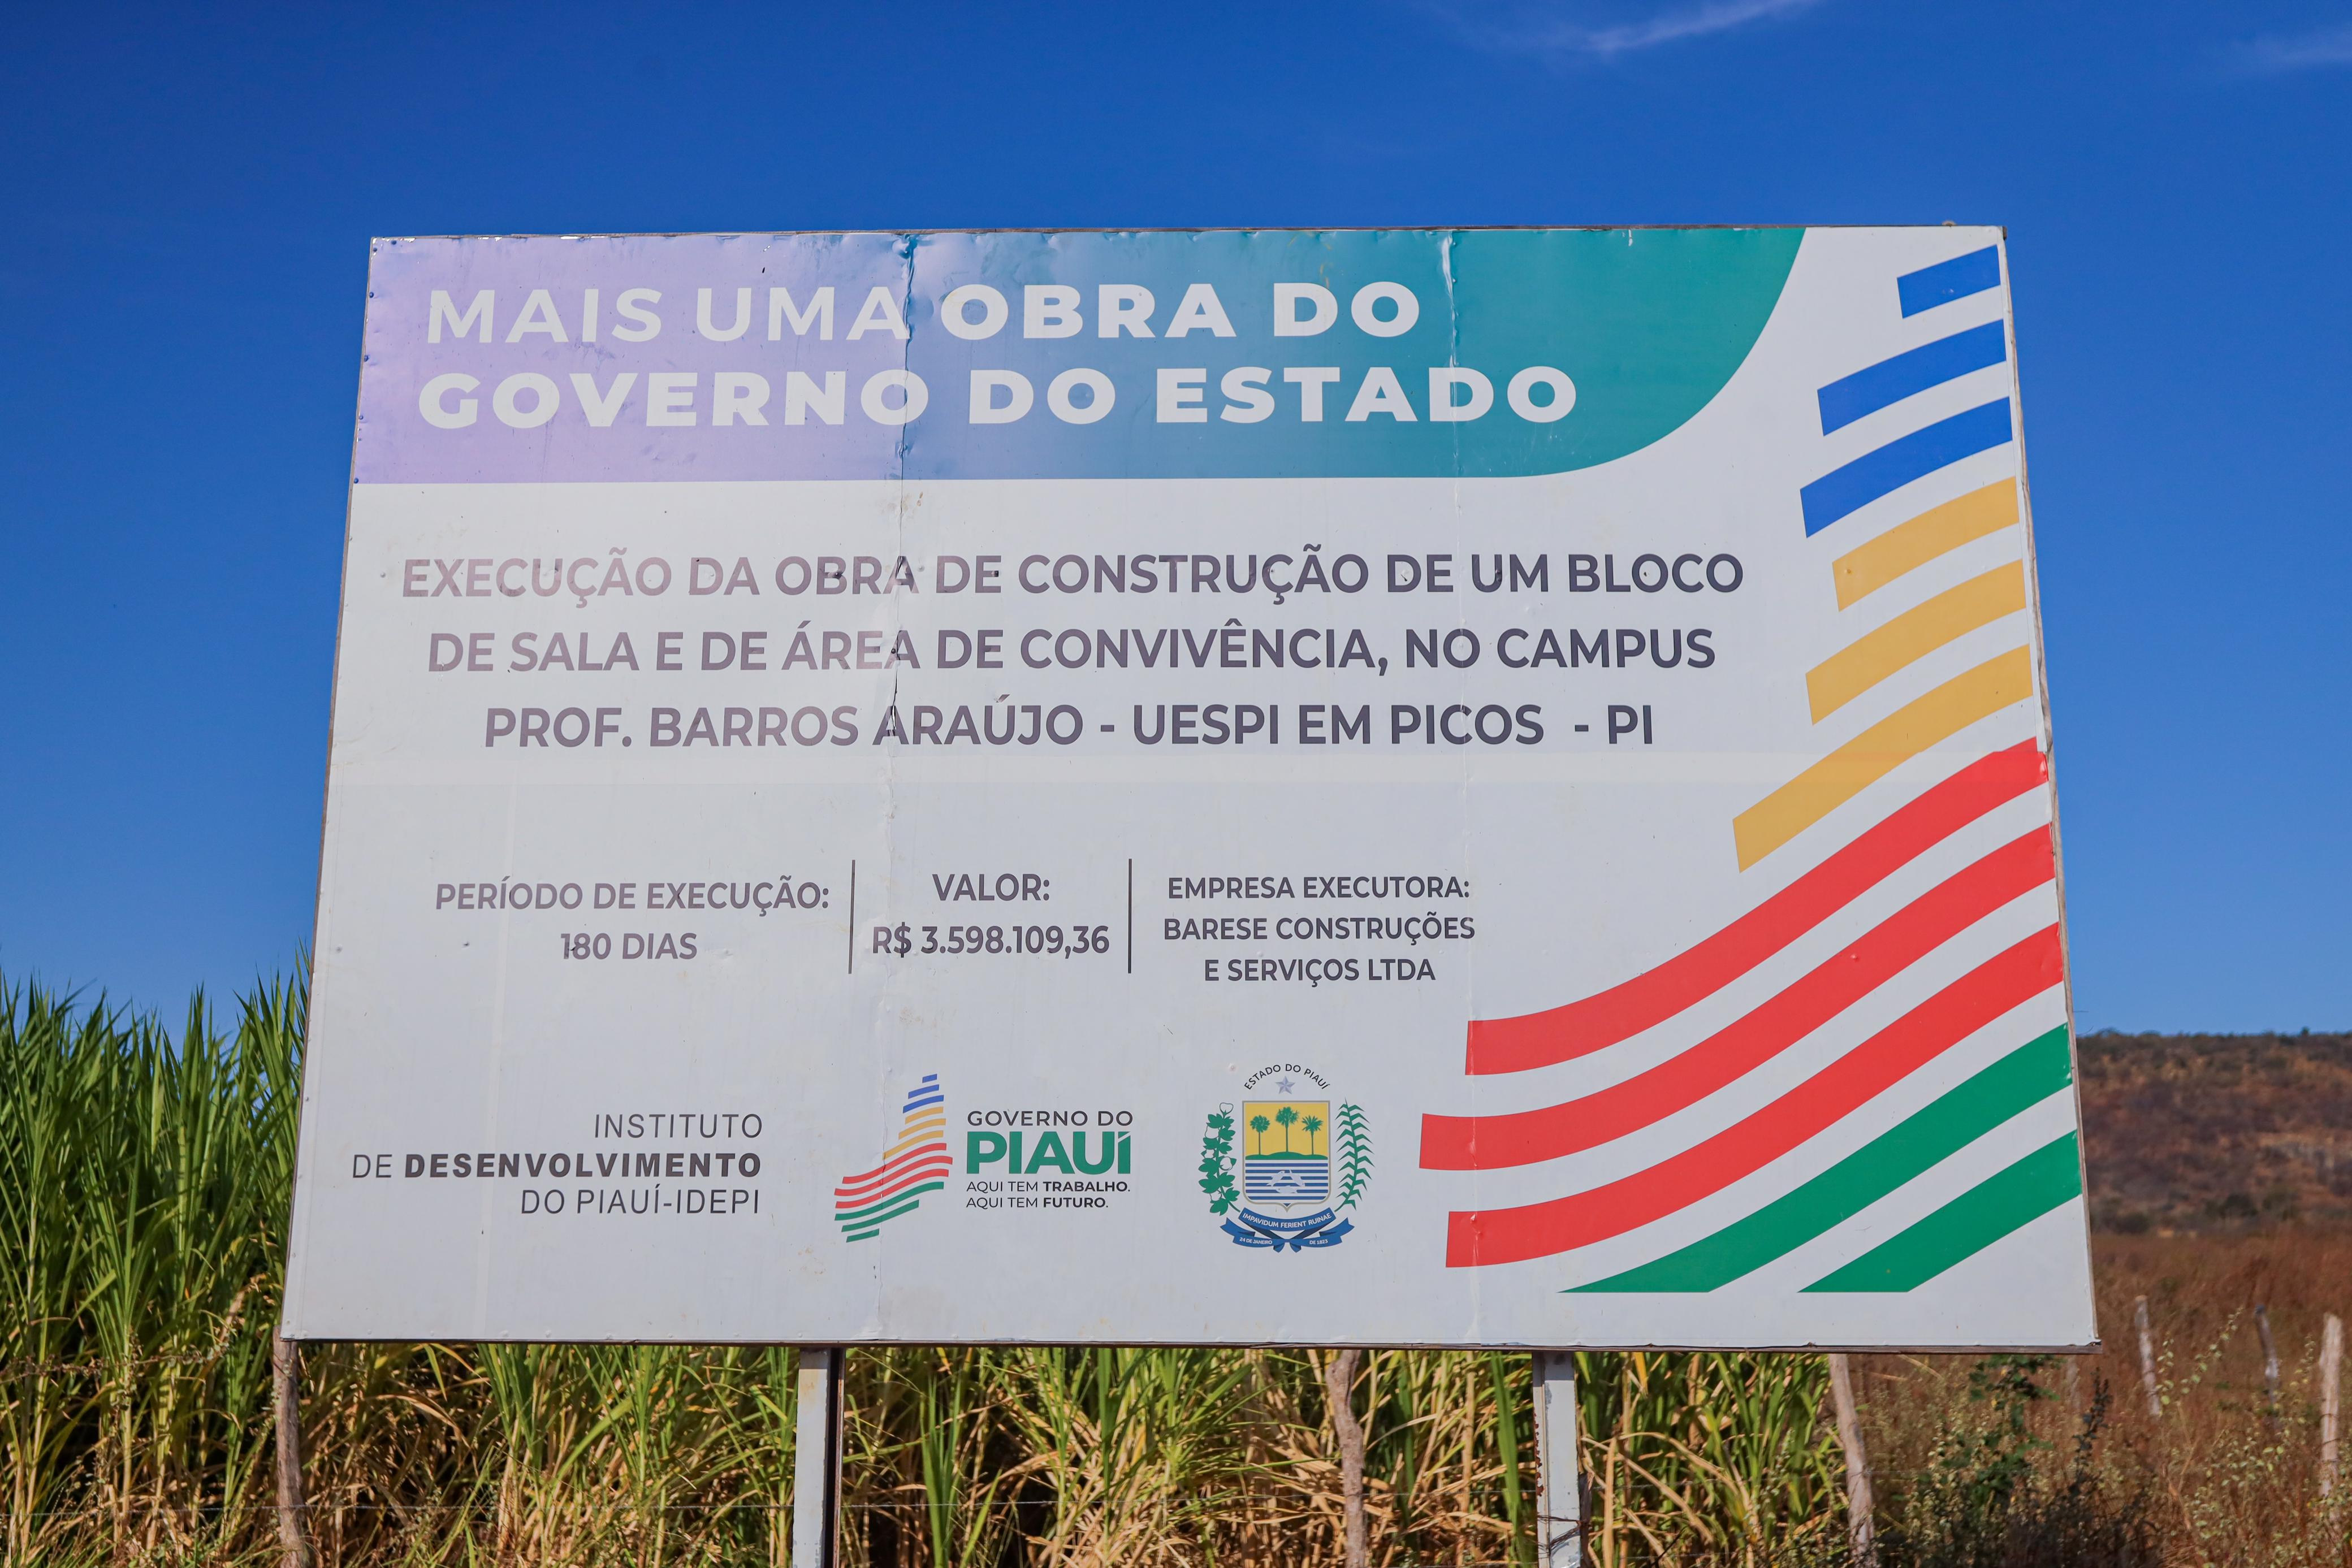 Foto: Reprodução/Secom Piauí